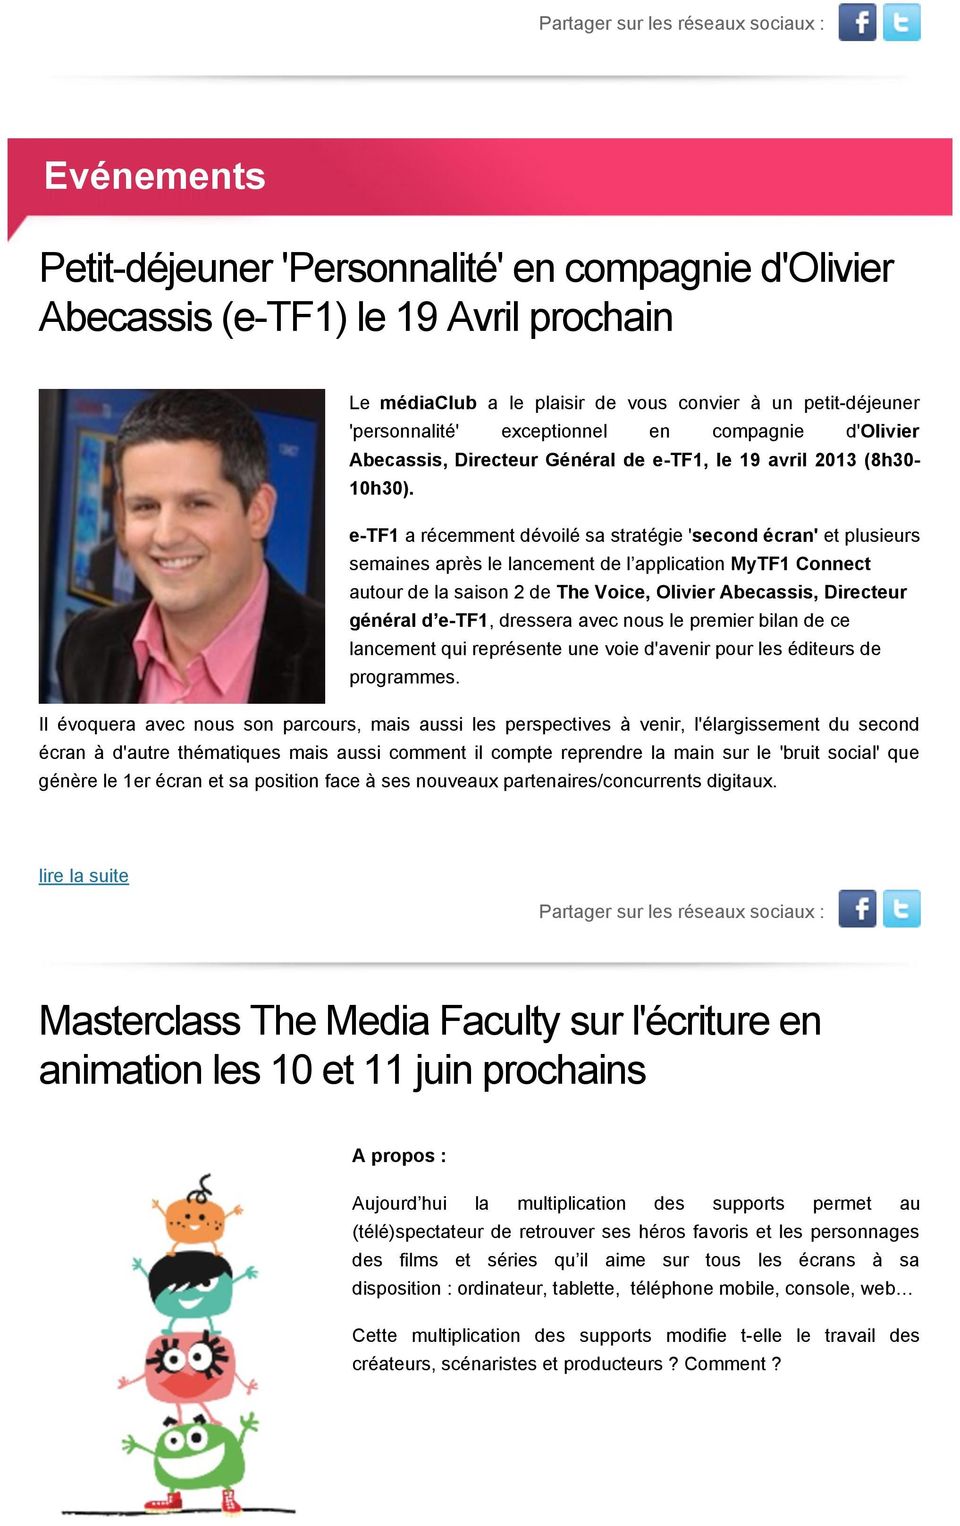 e-tf1 a récemment dévoilé sa stratégie 'second écran' et plusieurs semaines après le lancement de l application MyTF1 Connect autour de la saison 2 de The Voice, Olivier Abecassis, Directeur général